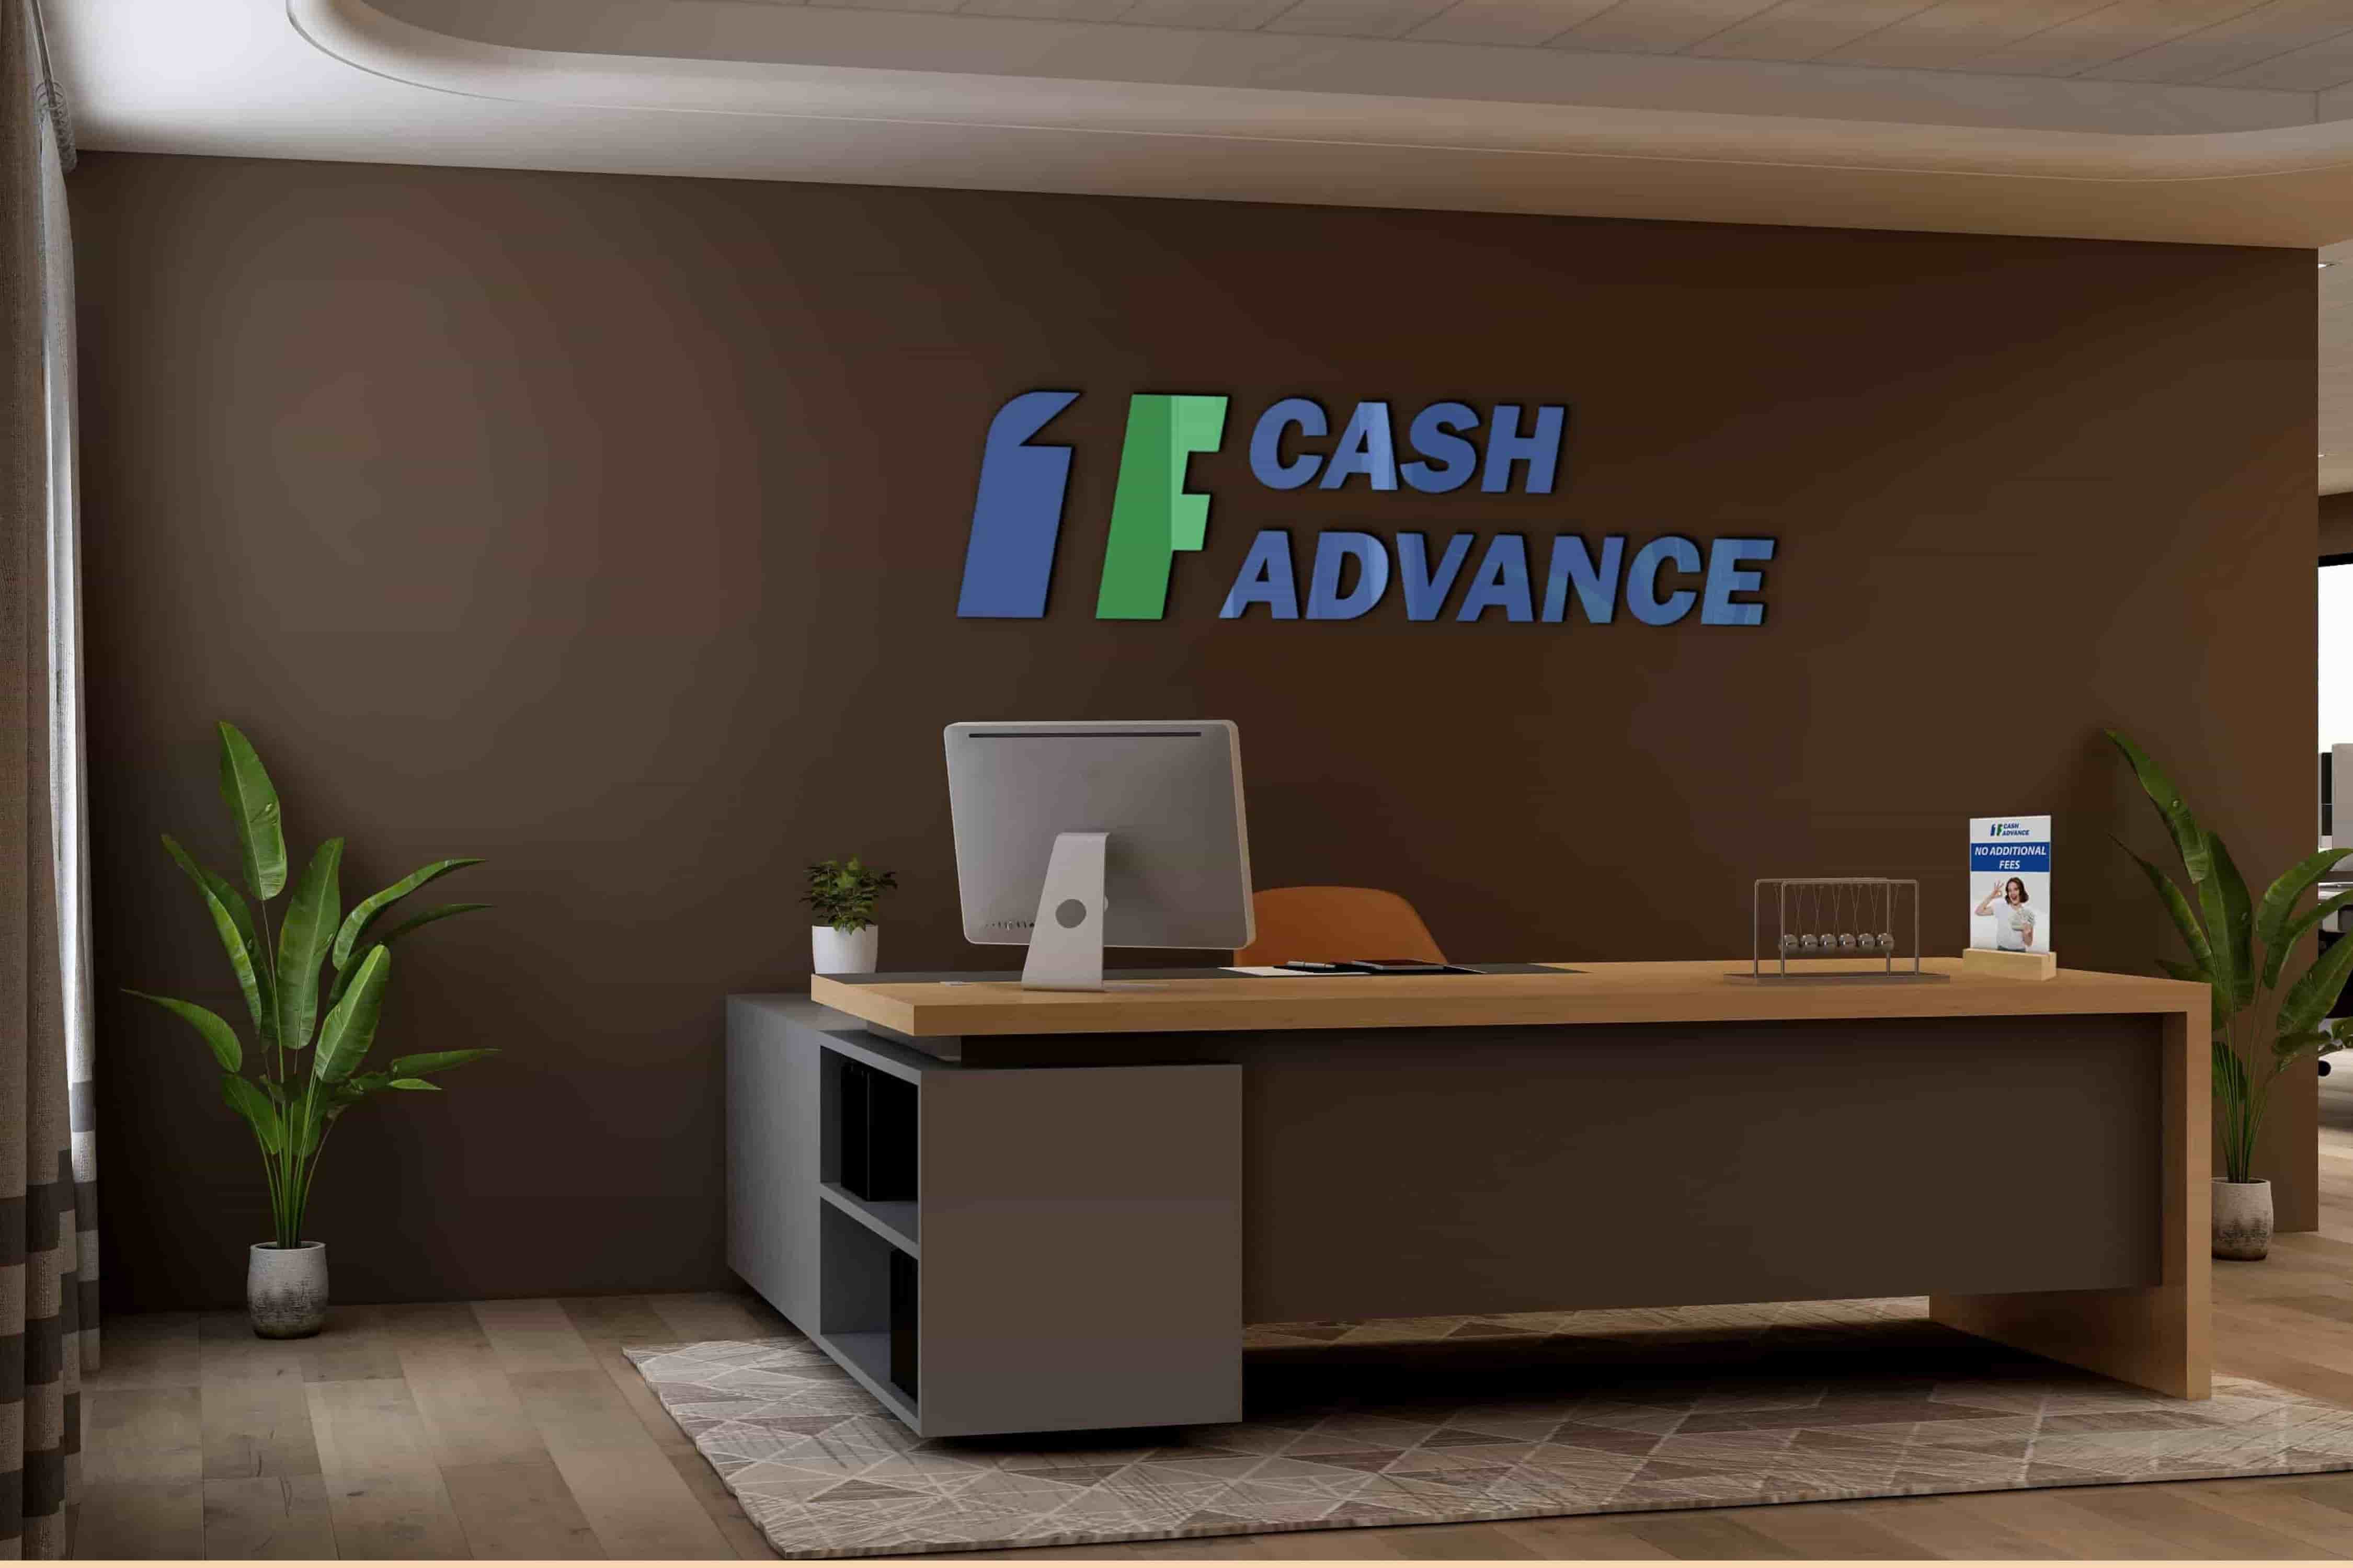 1F Cash Advance payday loans Vancouver, WA